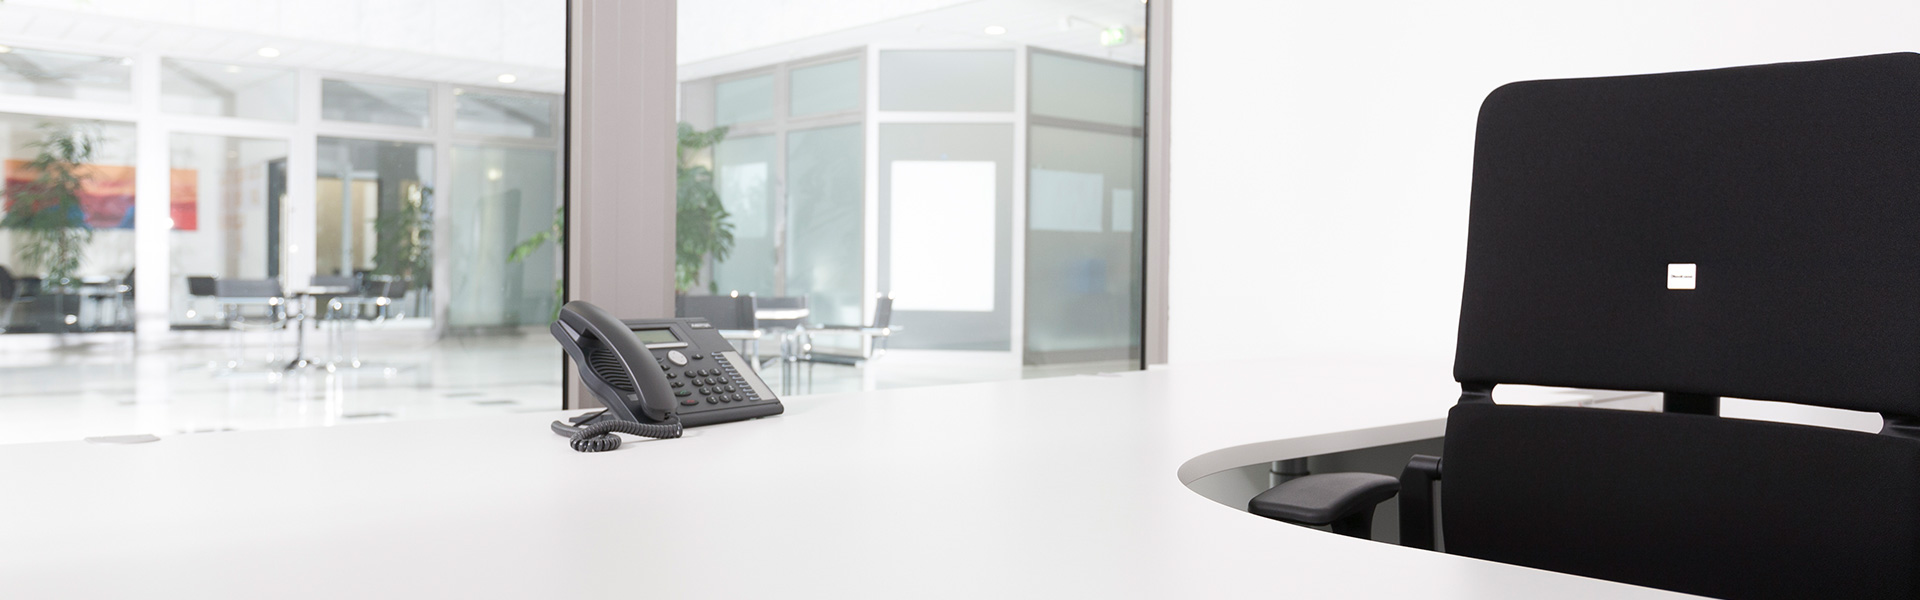 Helles Büro mit weißem Tisch und schwarzen Bürostuhl